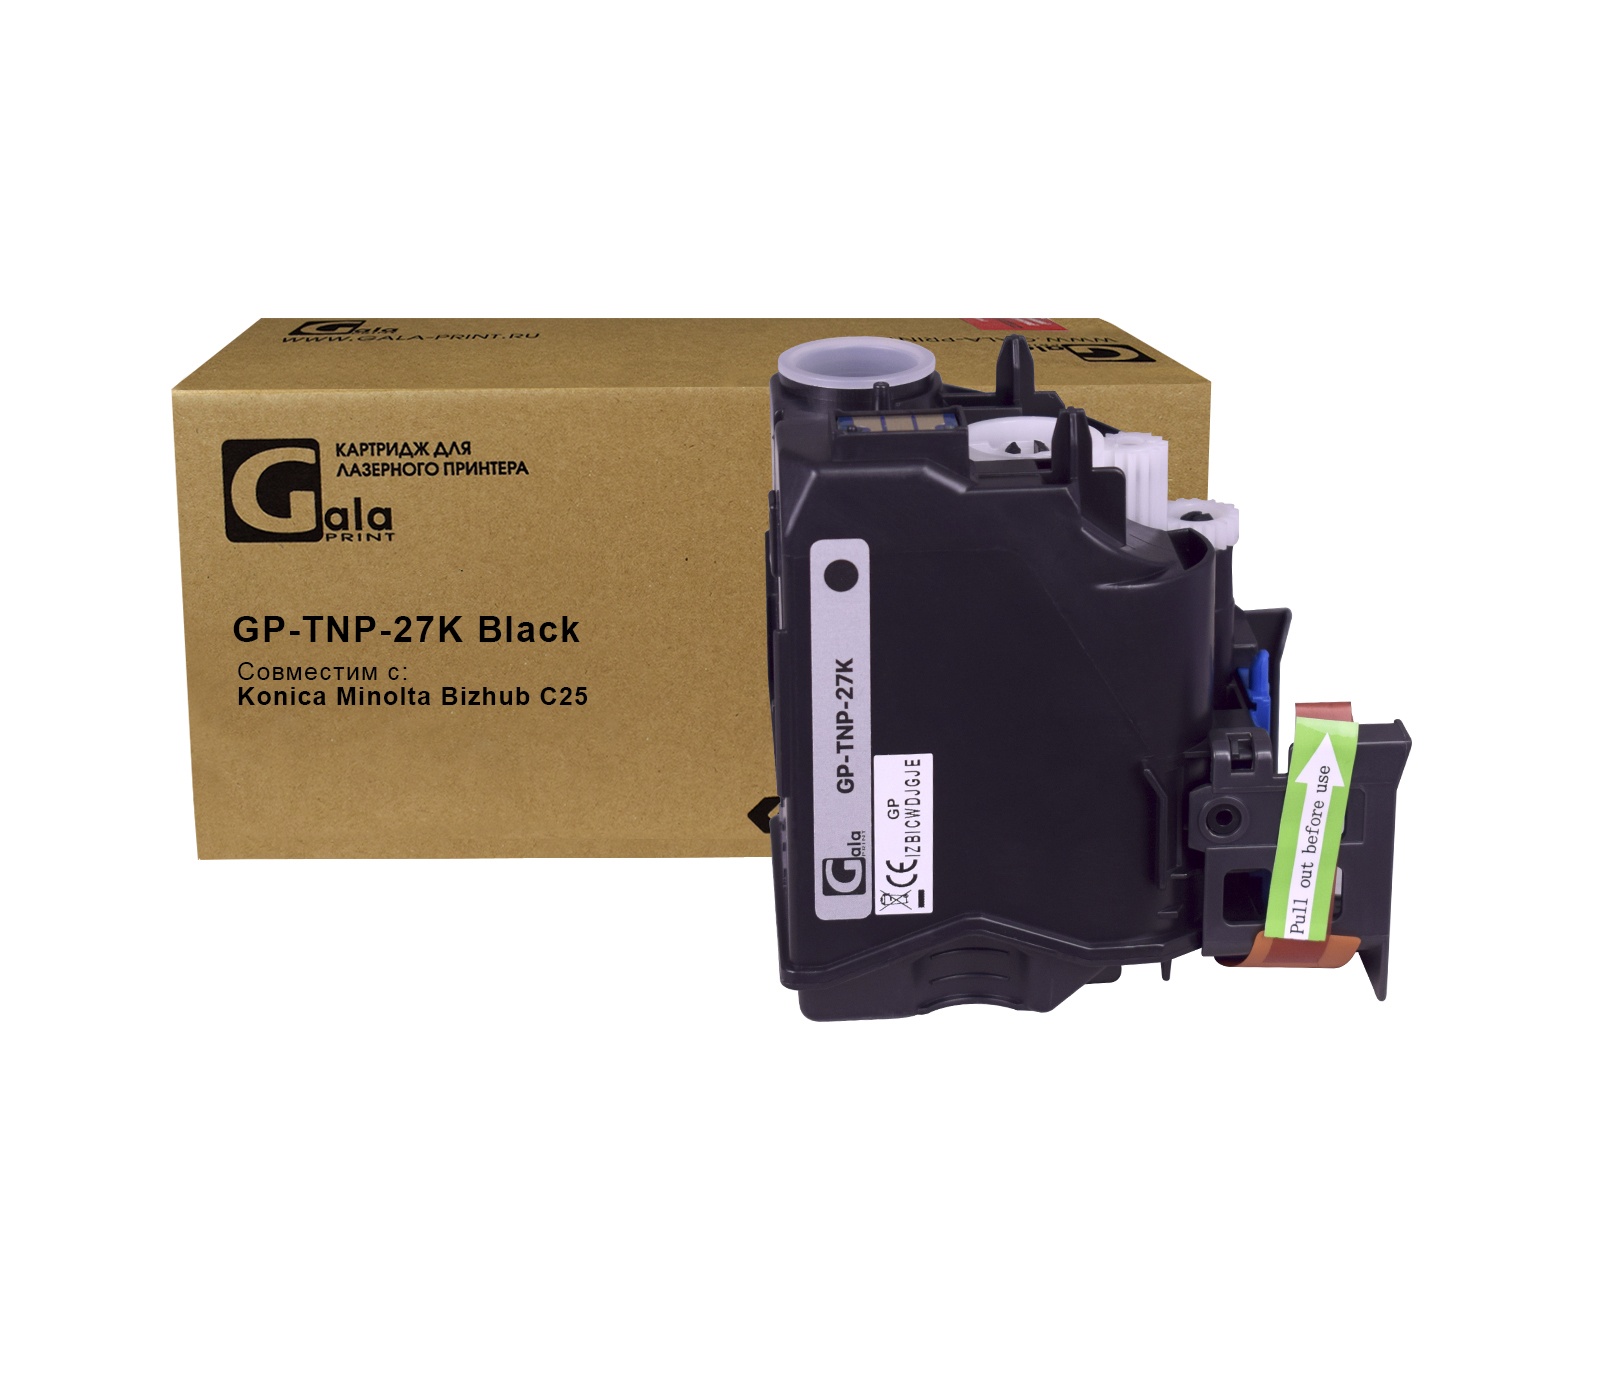 Картридж GP-TNP-27K для принтеров Konica Minolta Bizhub C25 Black 6000 копий GalaPrint